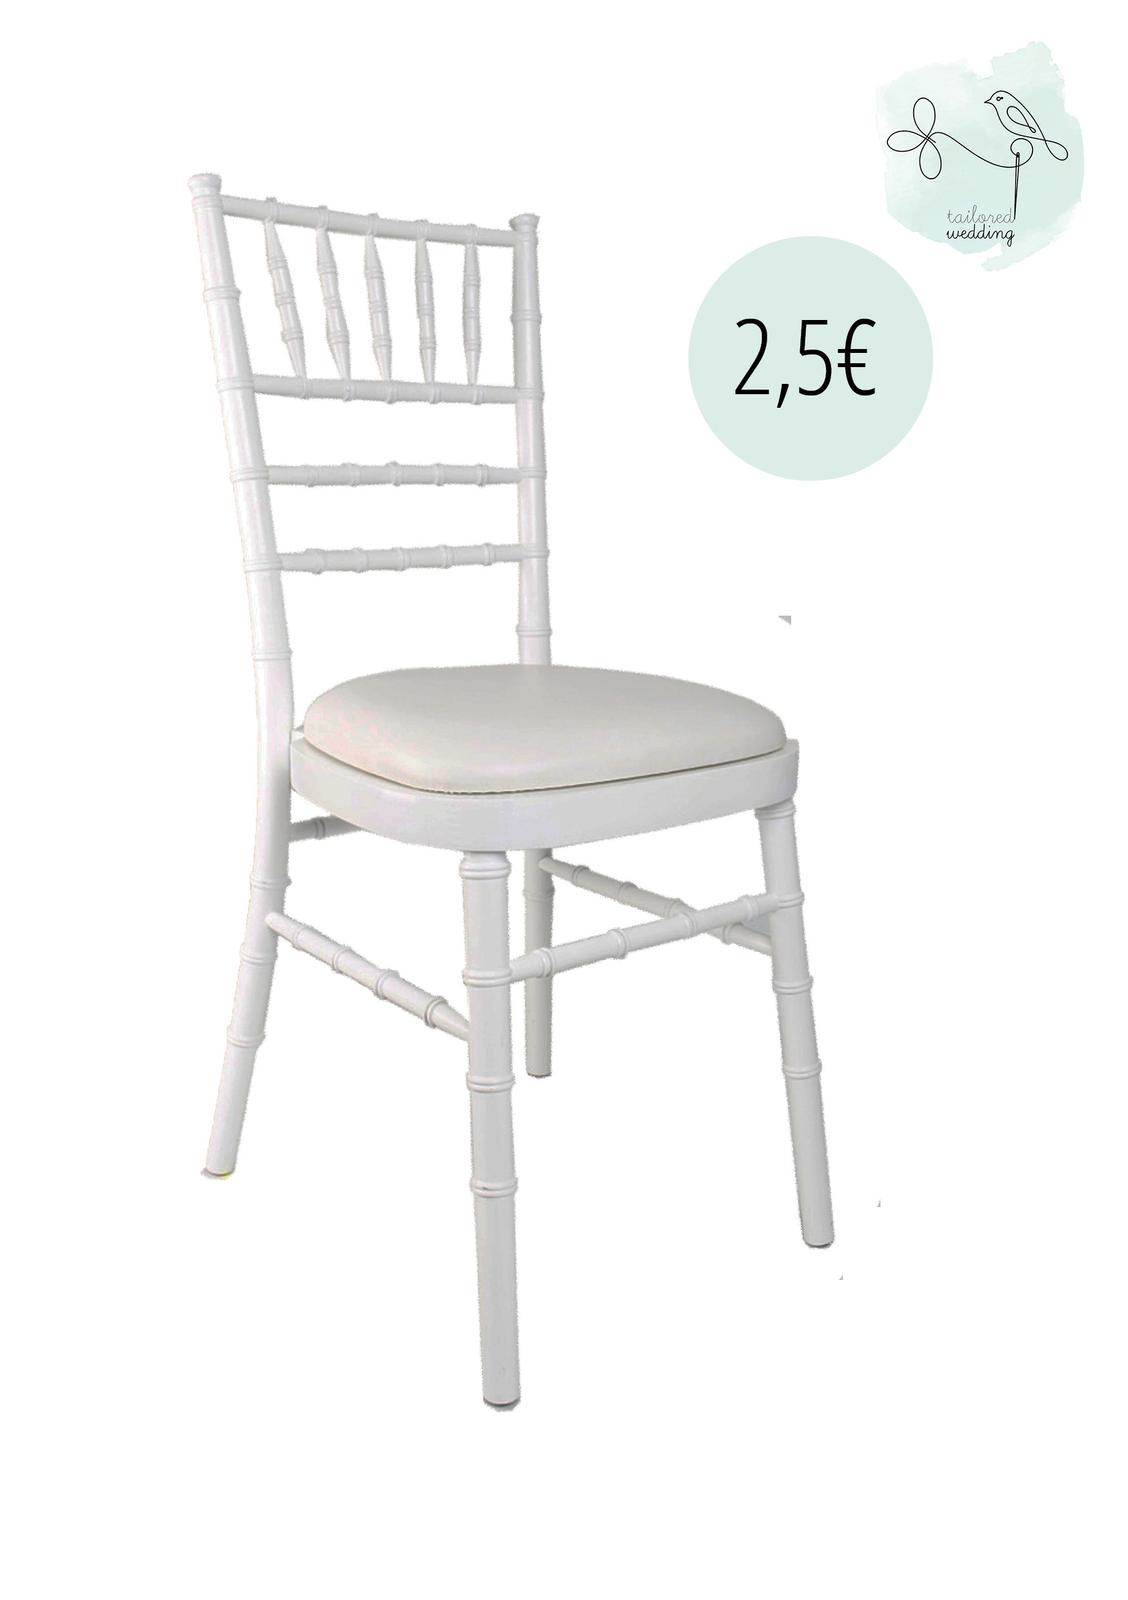 Biele Chiavari stoličky  - Obrázok č. 1